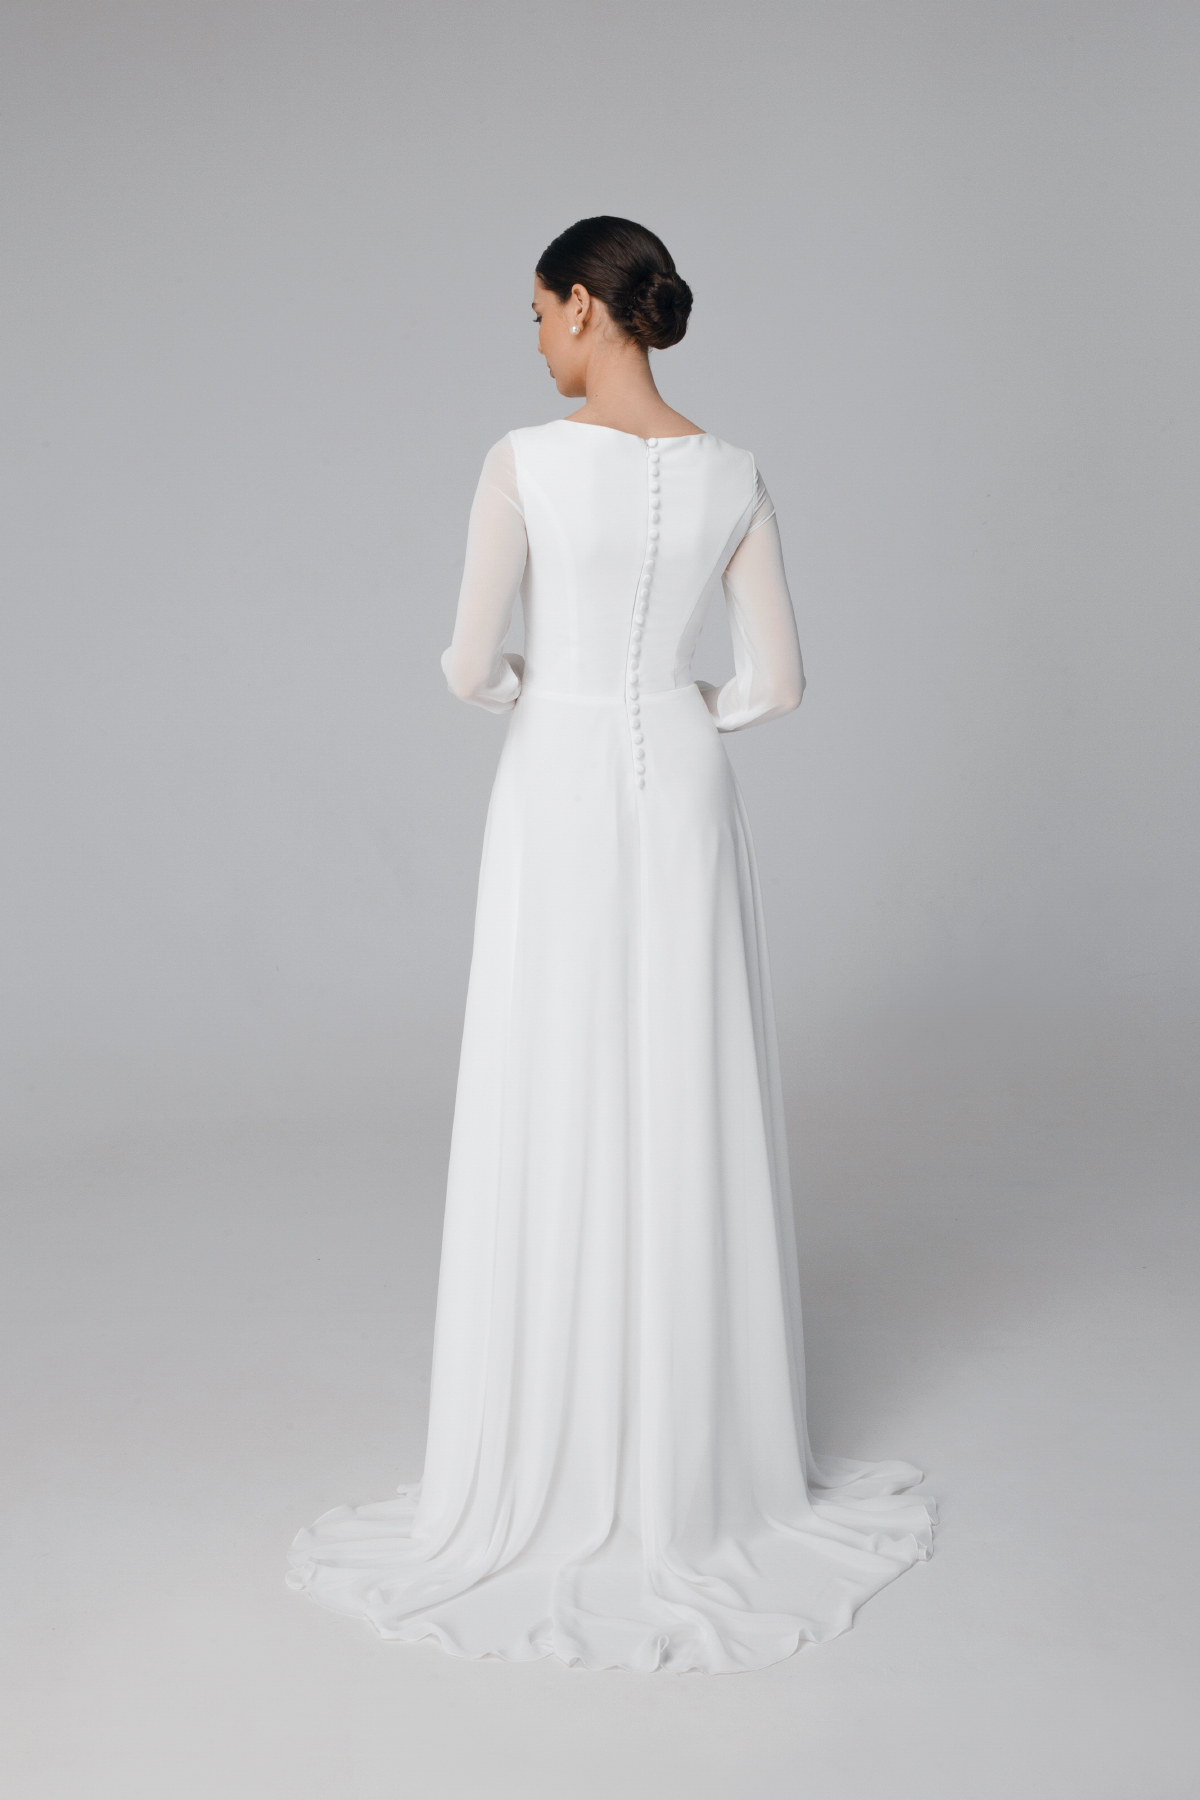 Modest long sleeve wedding dress